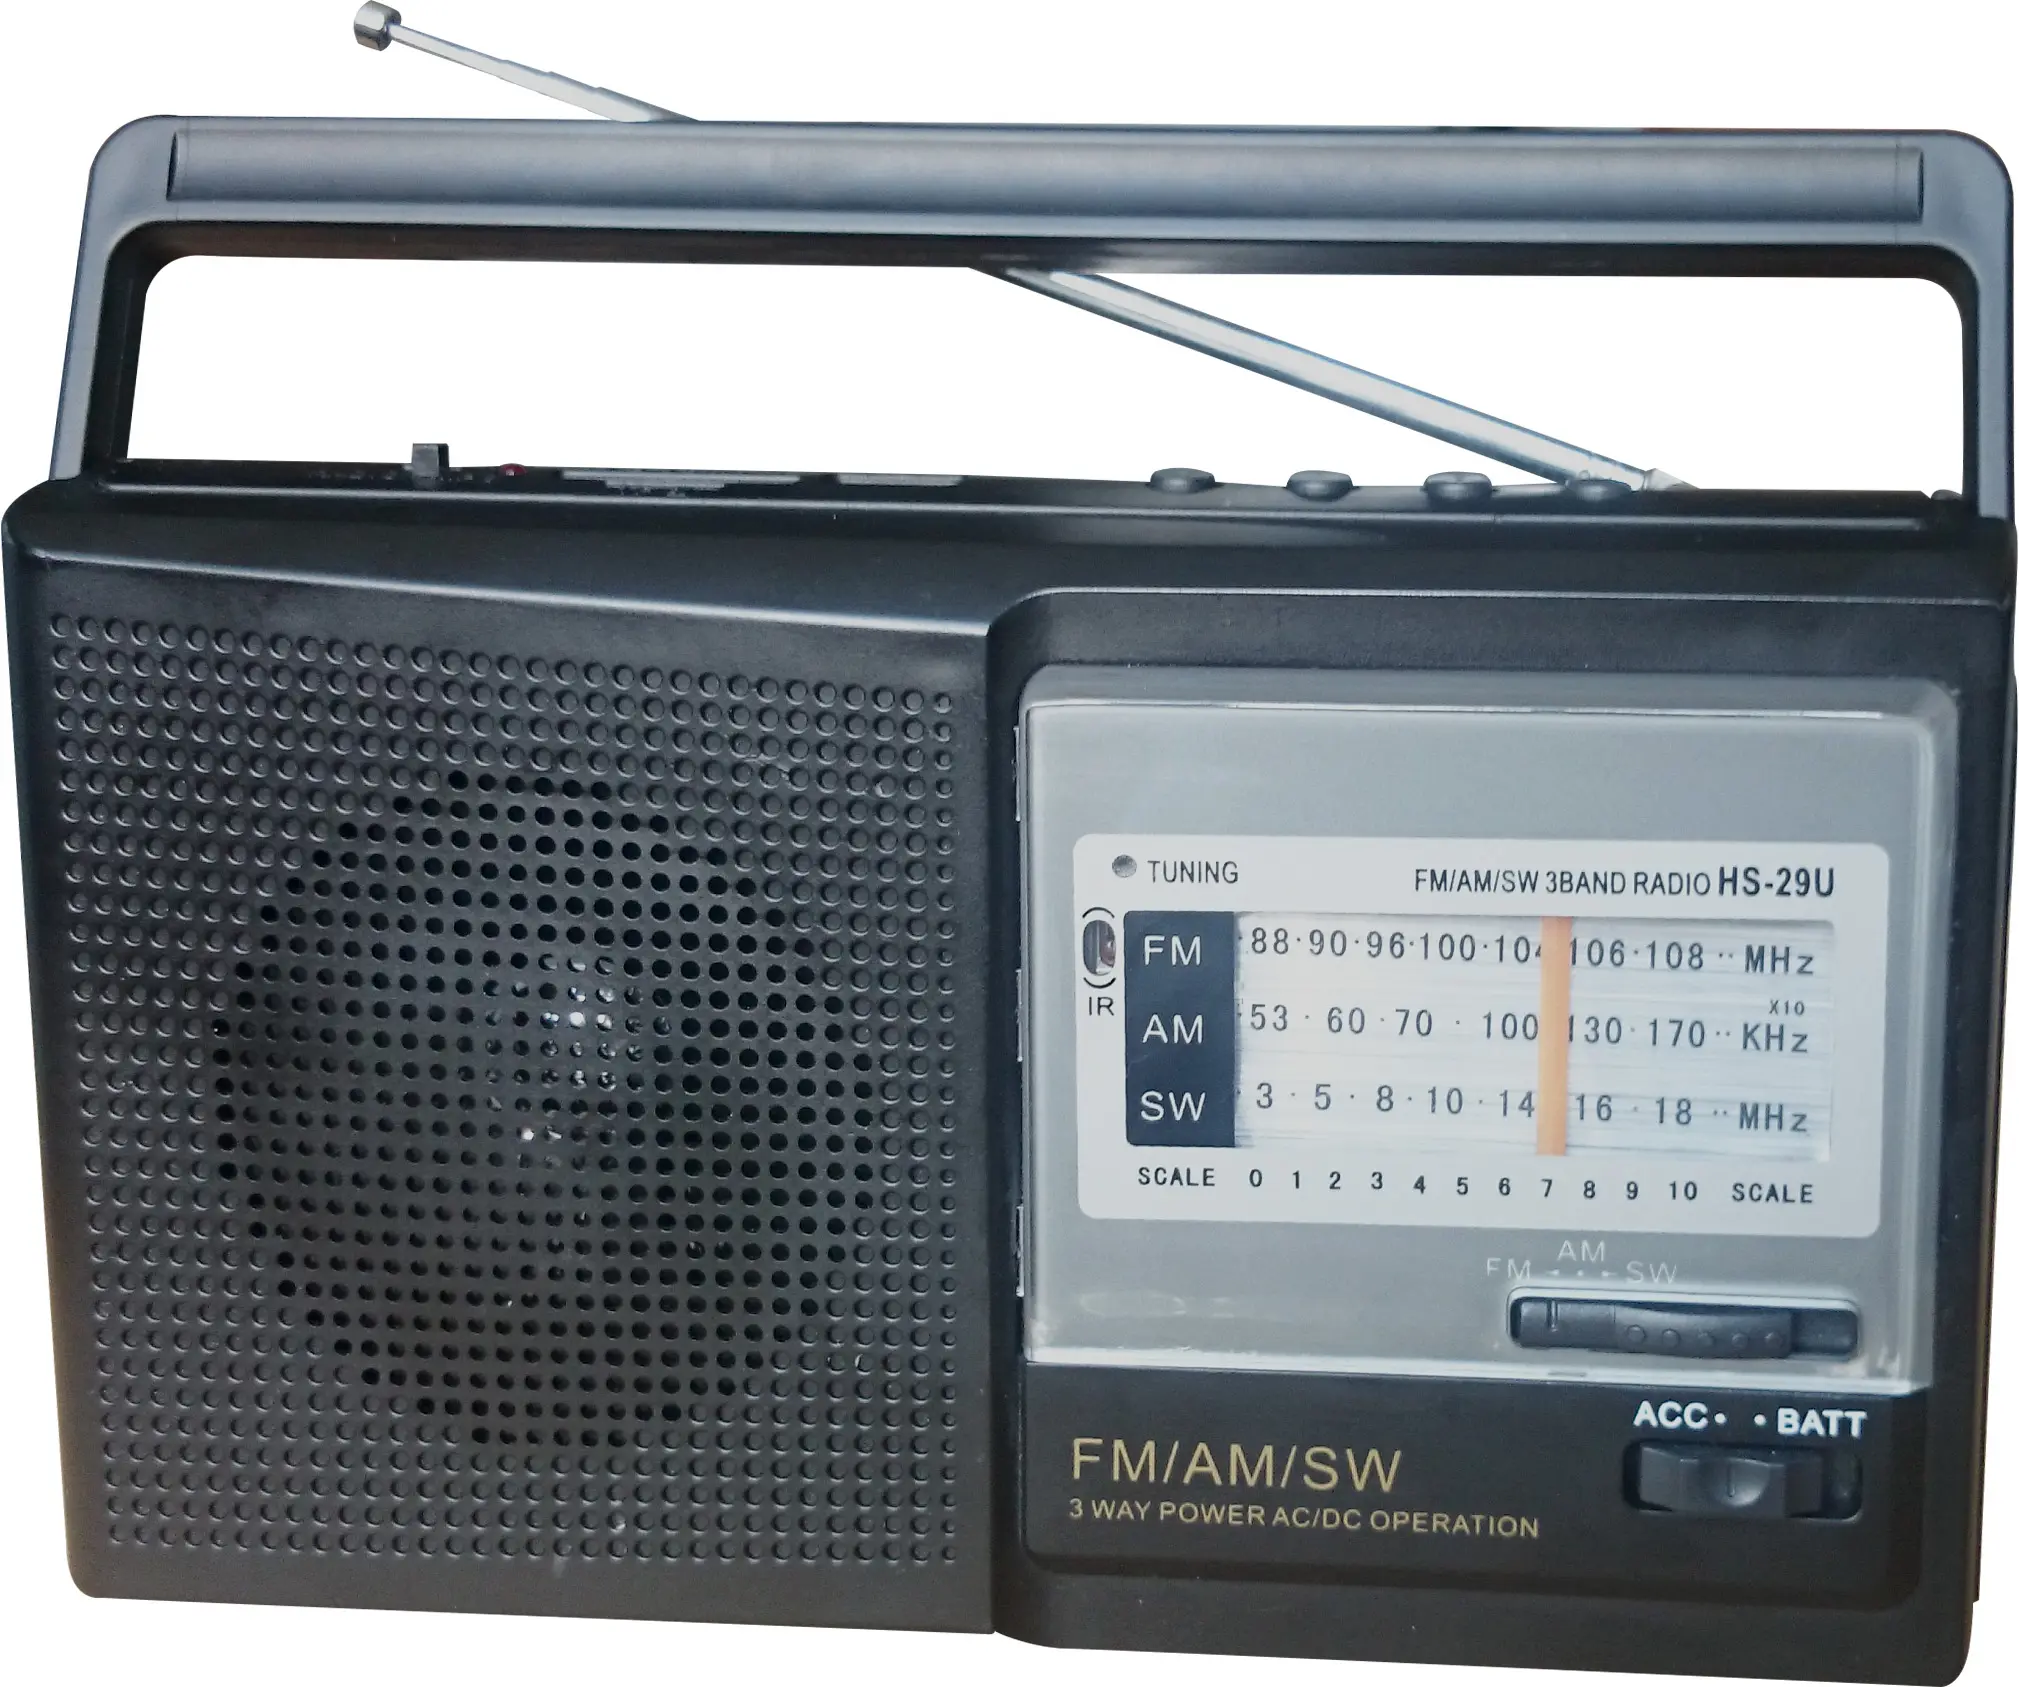 جهاز راديو fm am sw مزود بوظيفة التحكم عن بعد ومتوفر مرتفع المبيعات